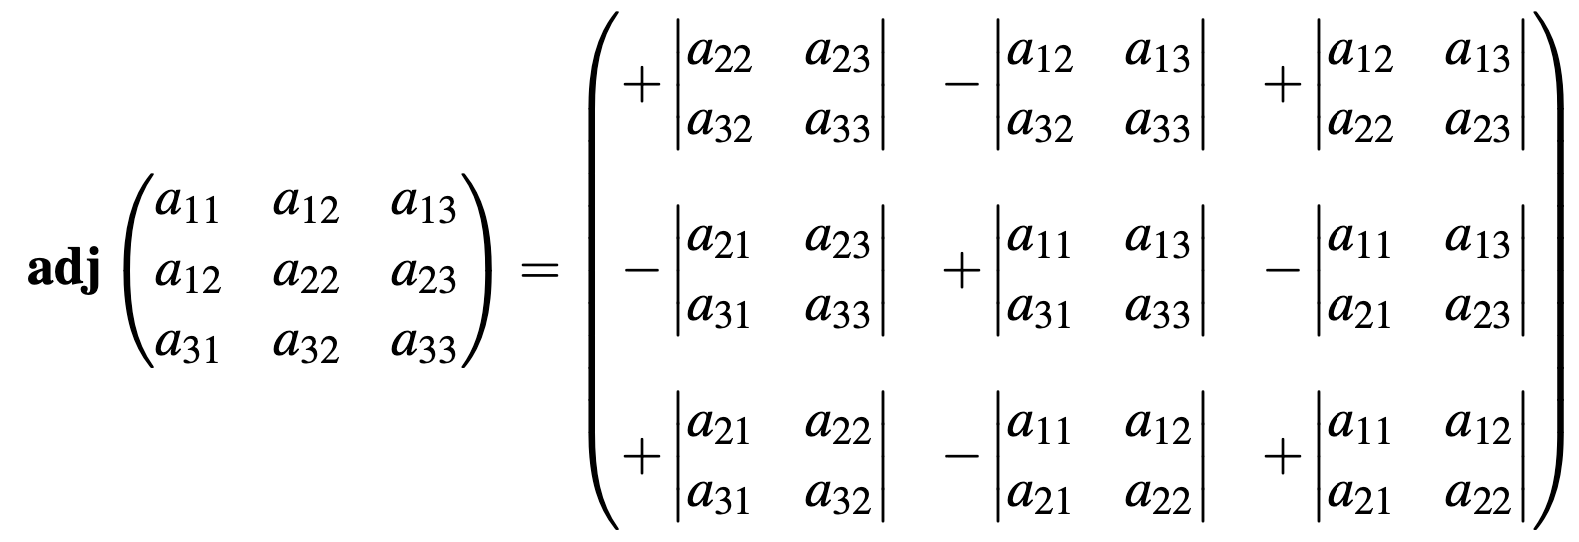 Ejemplo de una matriz adjunta de orden tres